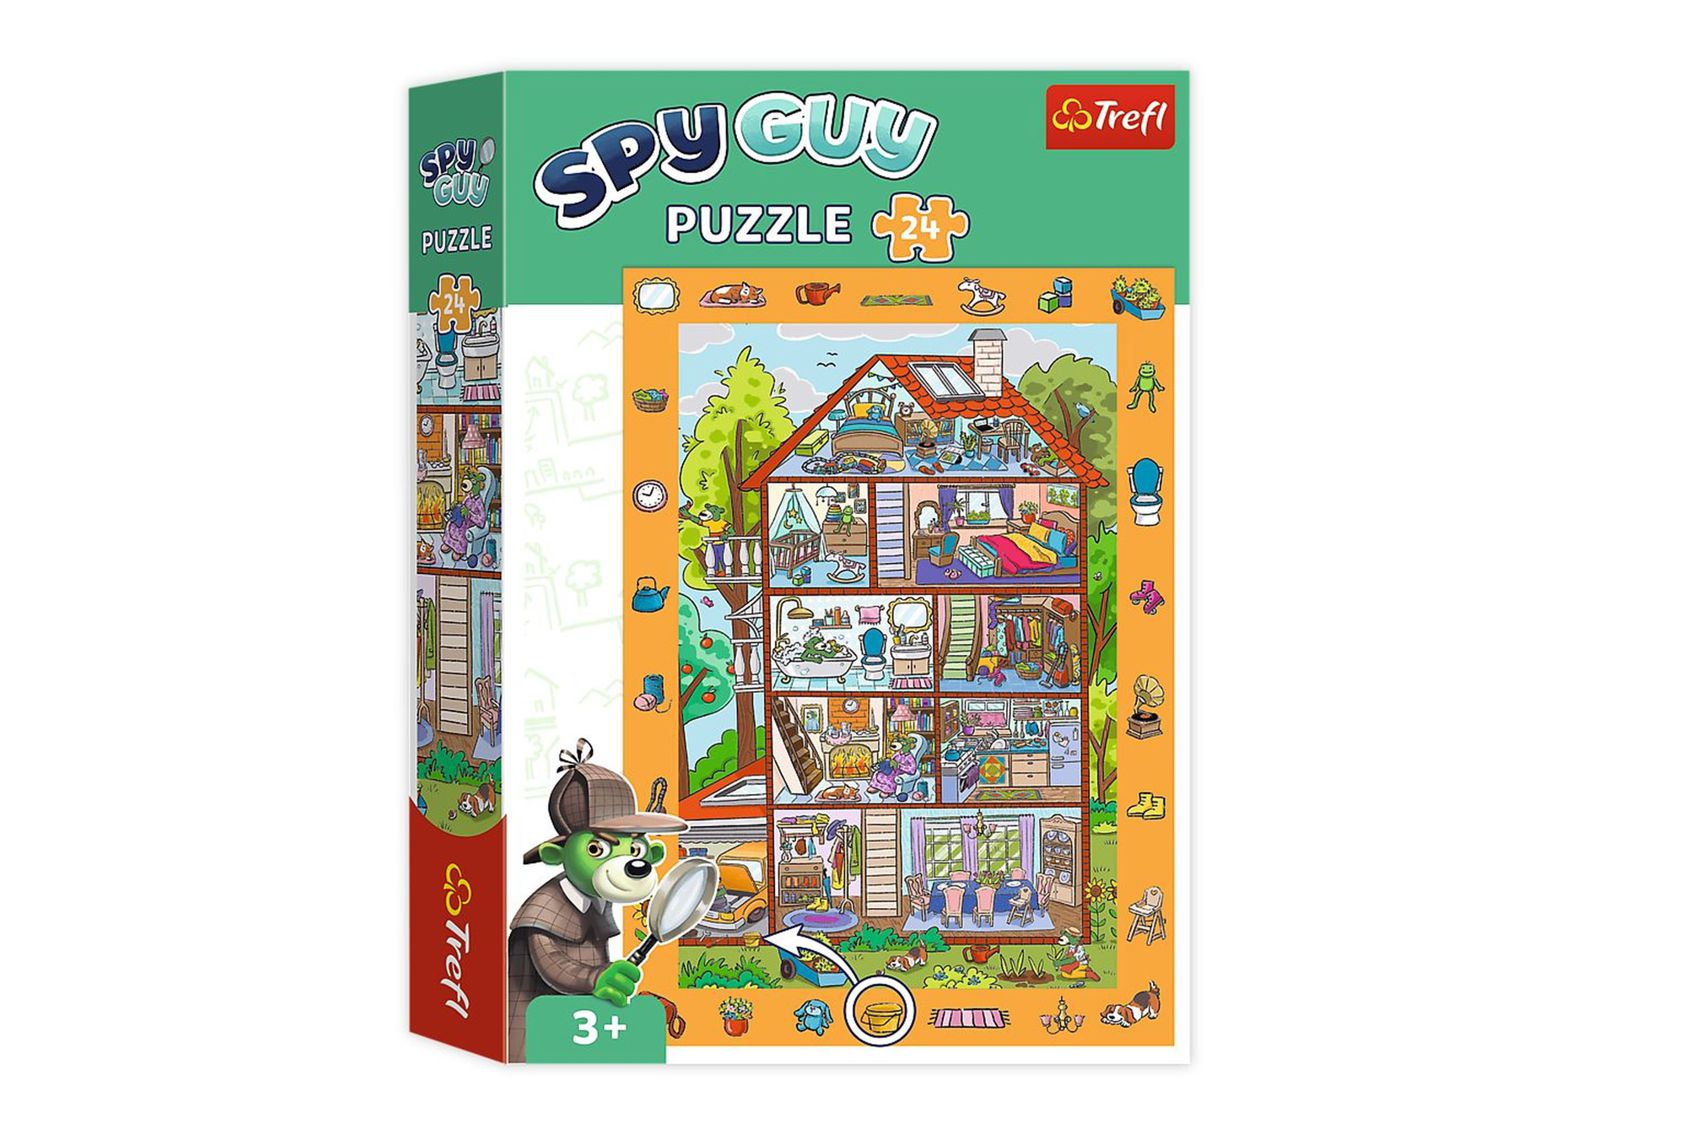 Trefl Puzzle Spy Guy - V domě 13,4x18,9cm 24 dílků v krabici 23x33x6cm